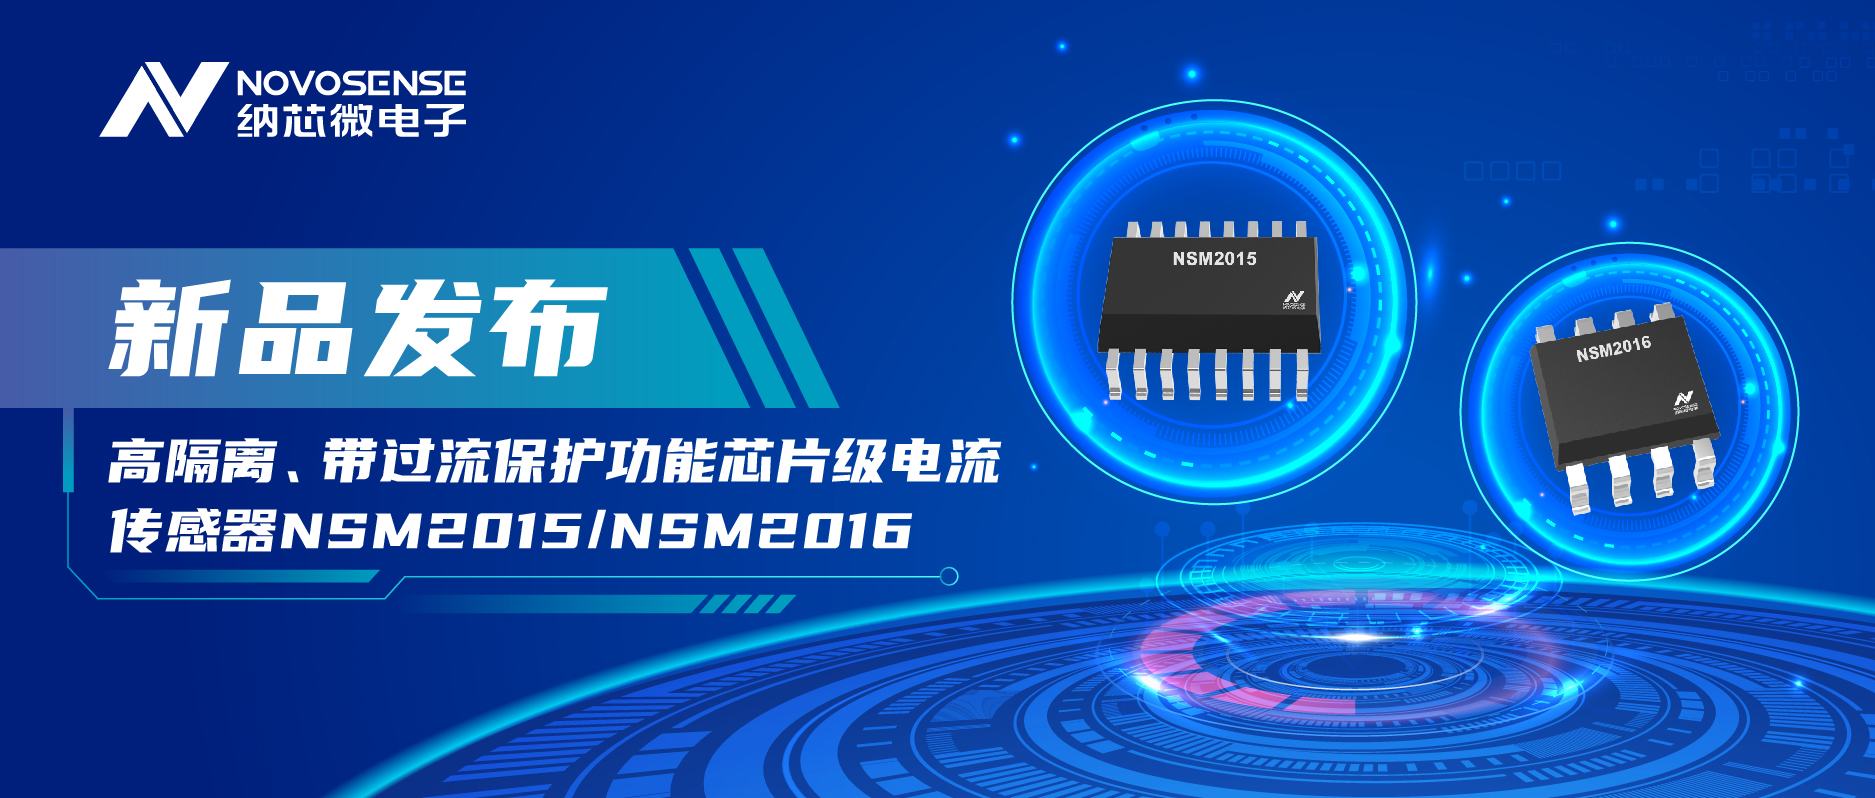 納芯微推出全新高隔離、帶過流保護功能芯片級電流傳感器——NSM2015/NSM2016系列